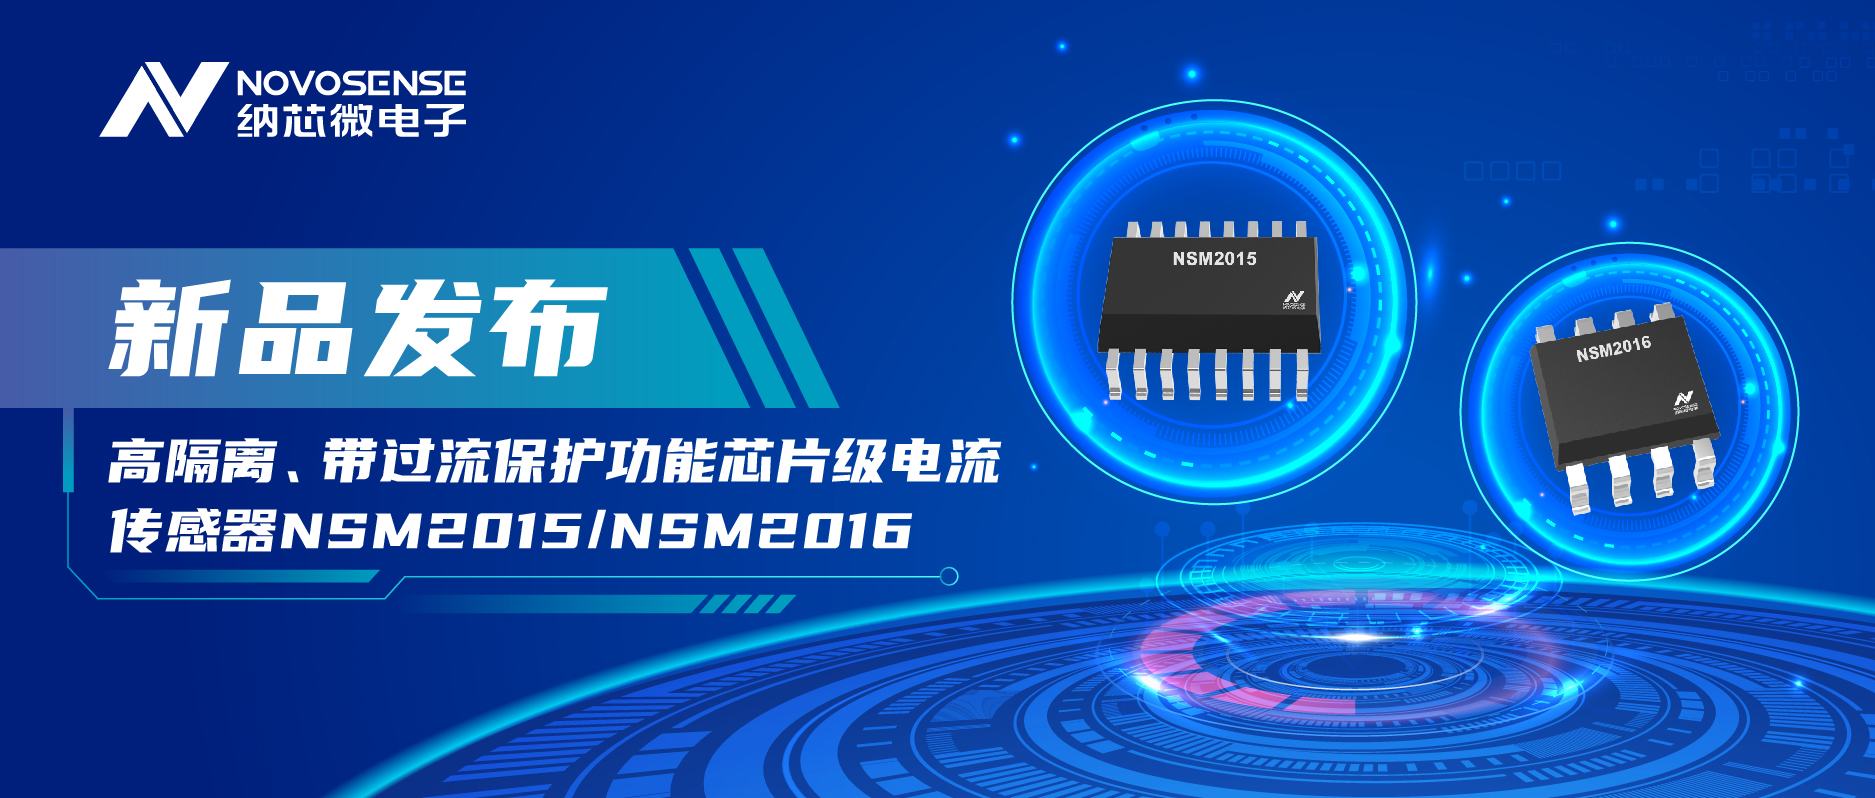 納芯微推出全新高隔離、帶過流保護功能芯片級電流傳感器——NSM2015/NSM2016系列